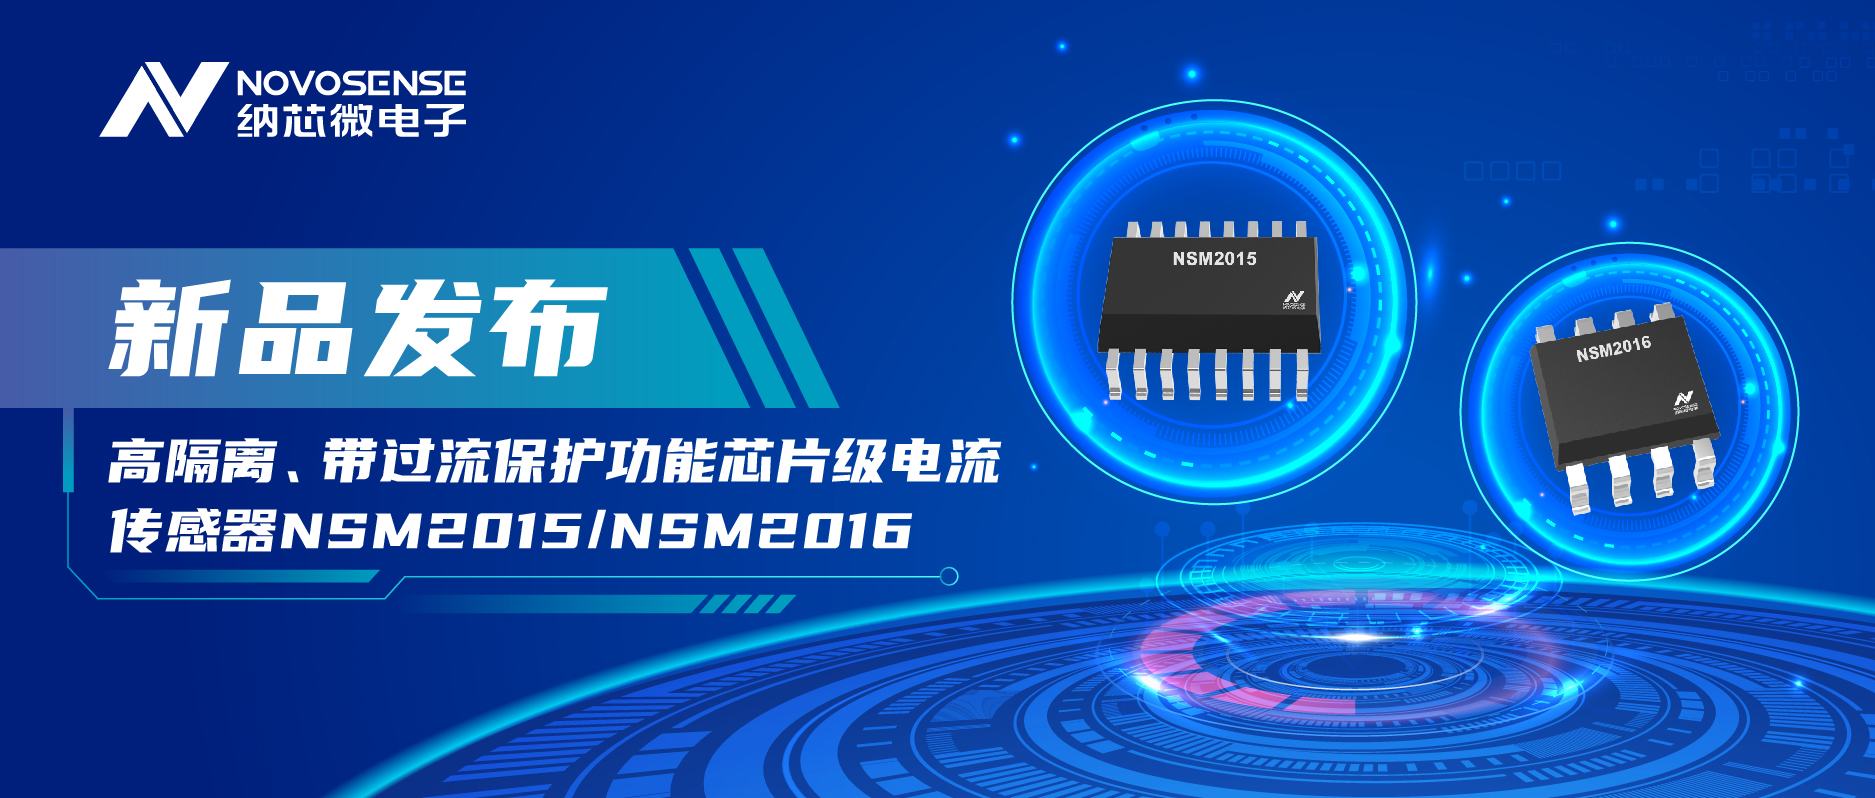 納芯微推出全新高隔離、帶過流保護功能芯片級電流傳感器——NSM2015/NSM2016系列